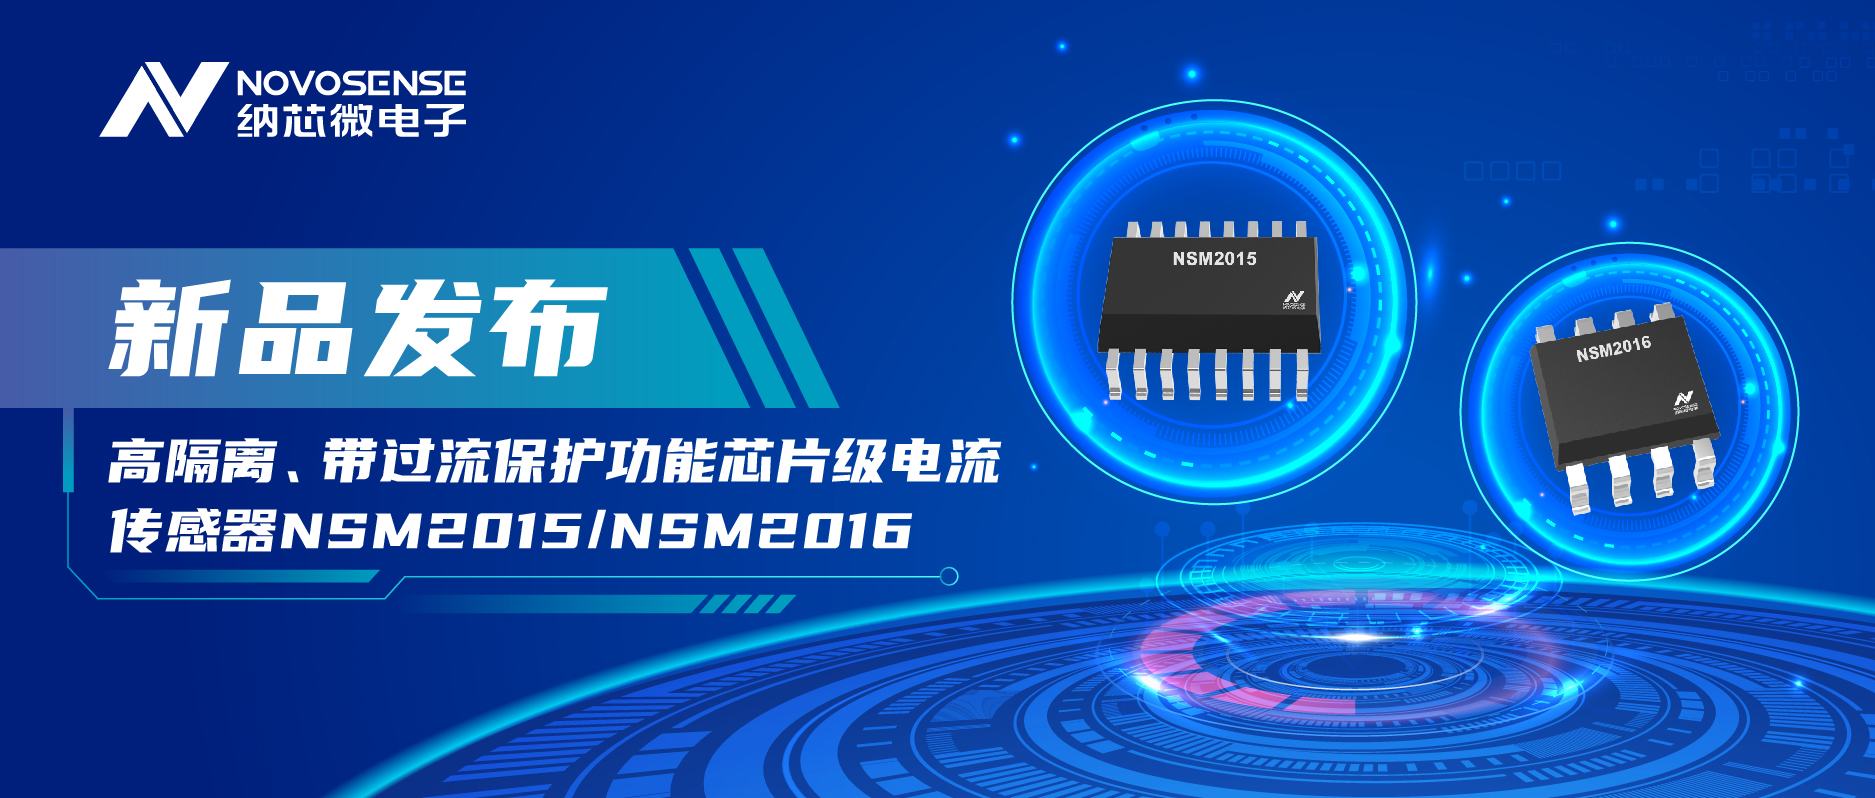 納芯微推出全新高隔離、帶過流保護功能芯片級電流傳感器——NSM2015/NSM2016系列